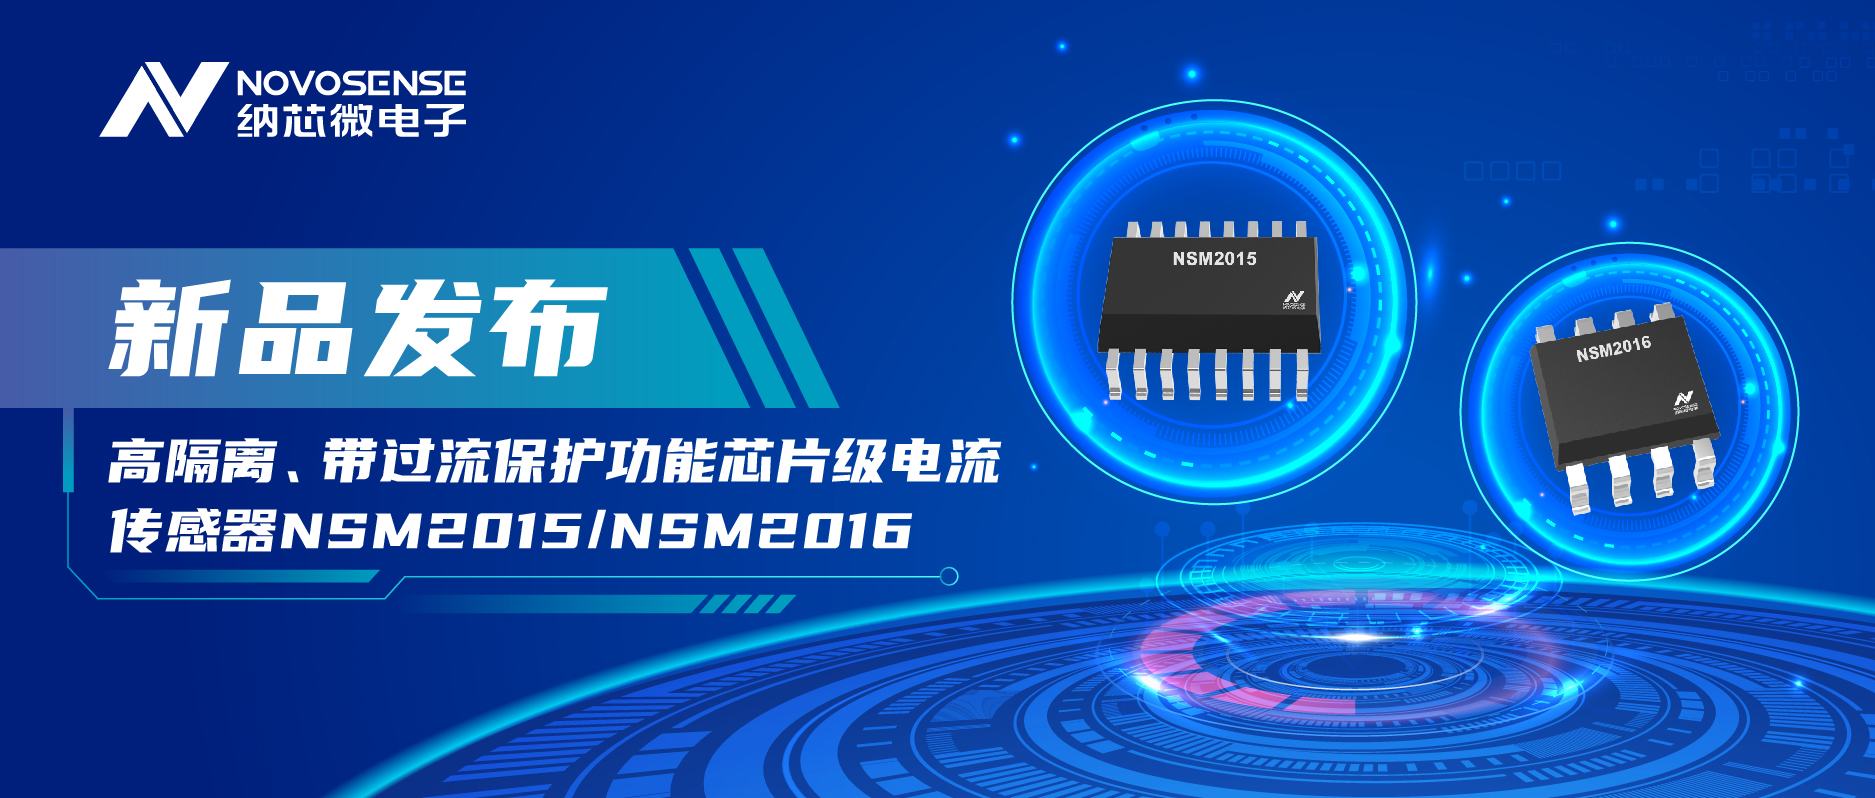 納芯微推出全新高隔離、帶過流保護功能芯片級電流傳感器——NSM2015/NSM2016系列